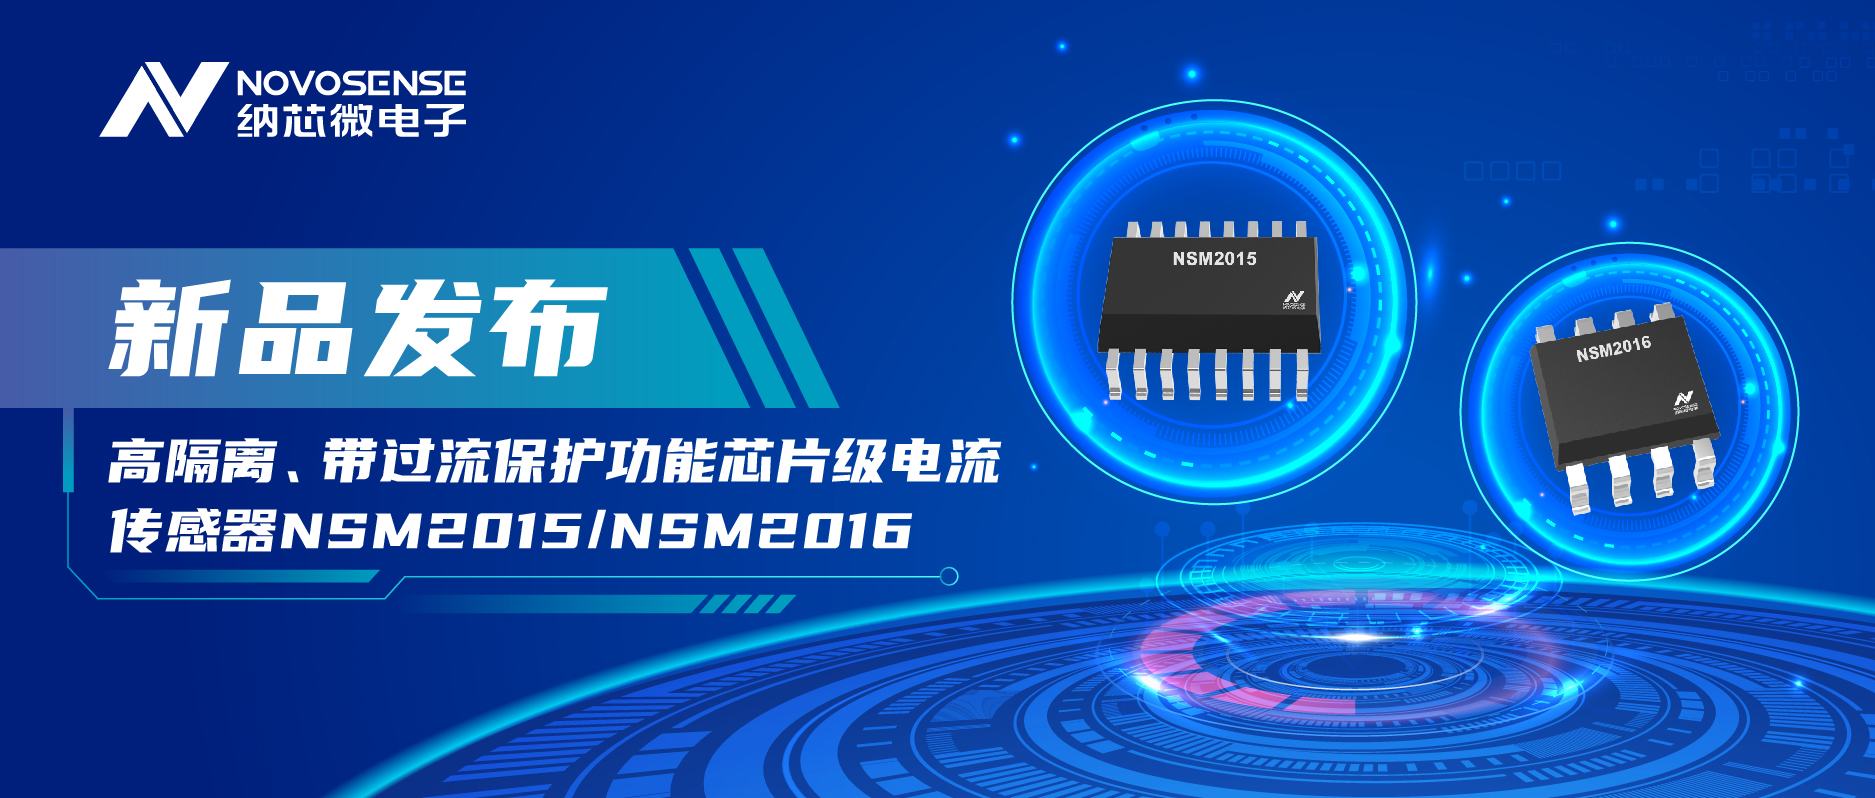 納芯微推出全新高隔離、帶過流保護功能芯片級電流傳感器——NSM2015/NSM2016系列